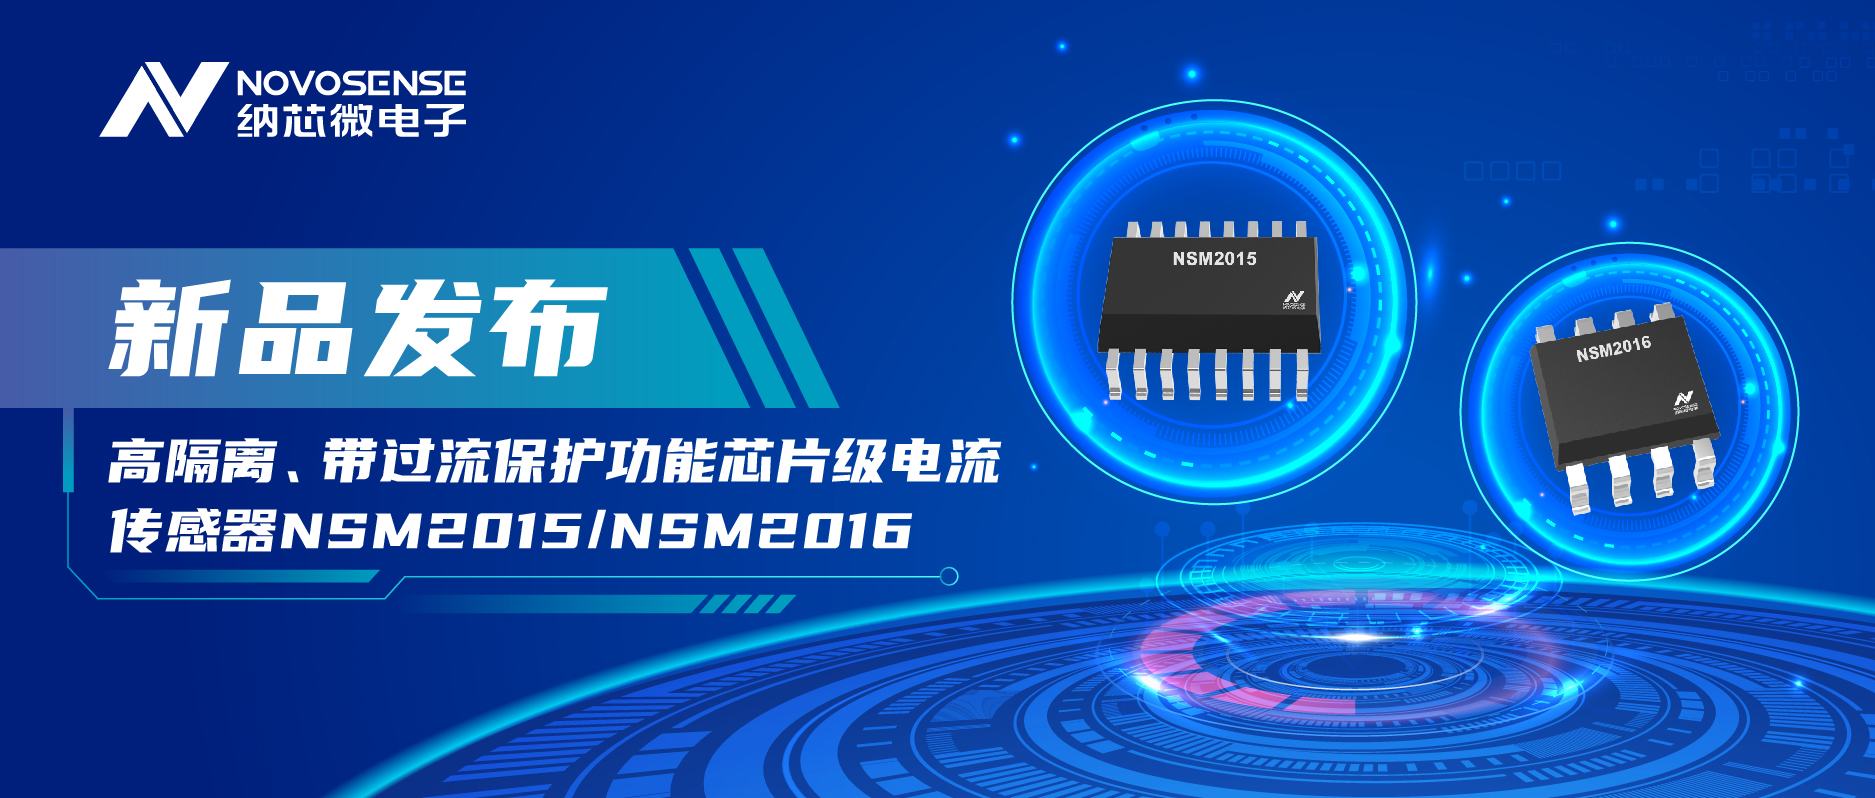 納芯微推出全新高隔離、帶過流保護功能芯片級電流傳感器——NSM2015/NSM2016系列